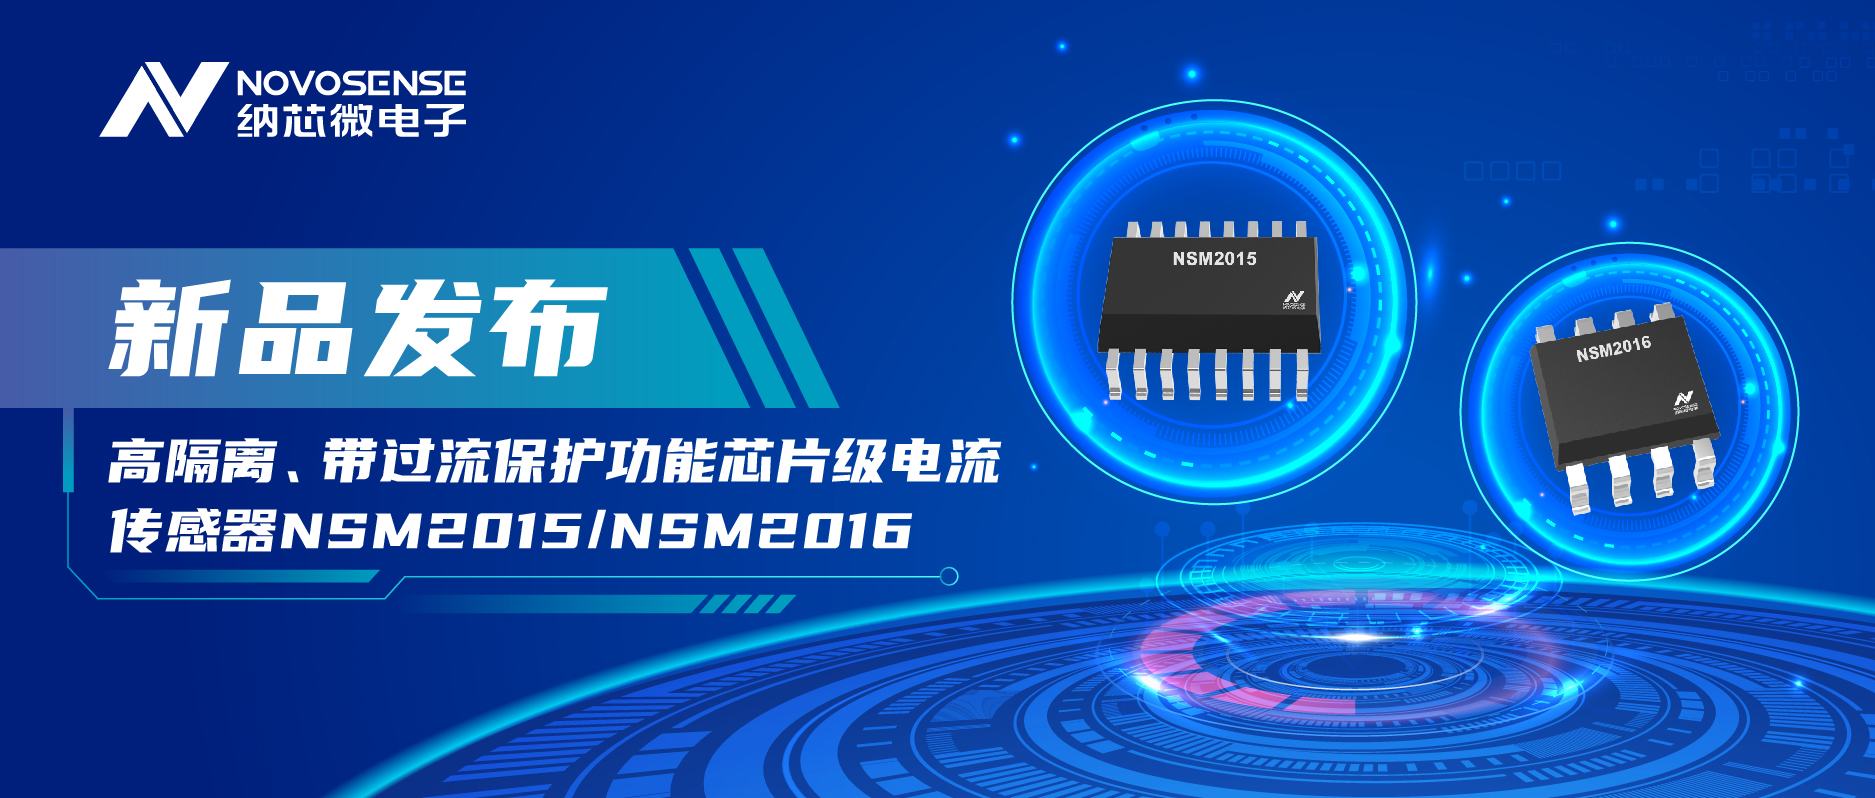 納芯微推出全新高隔離、帶過流保護功能芯片級電流傳感器——NSM2015/NSM2016系列